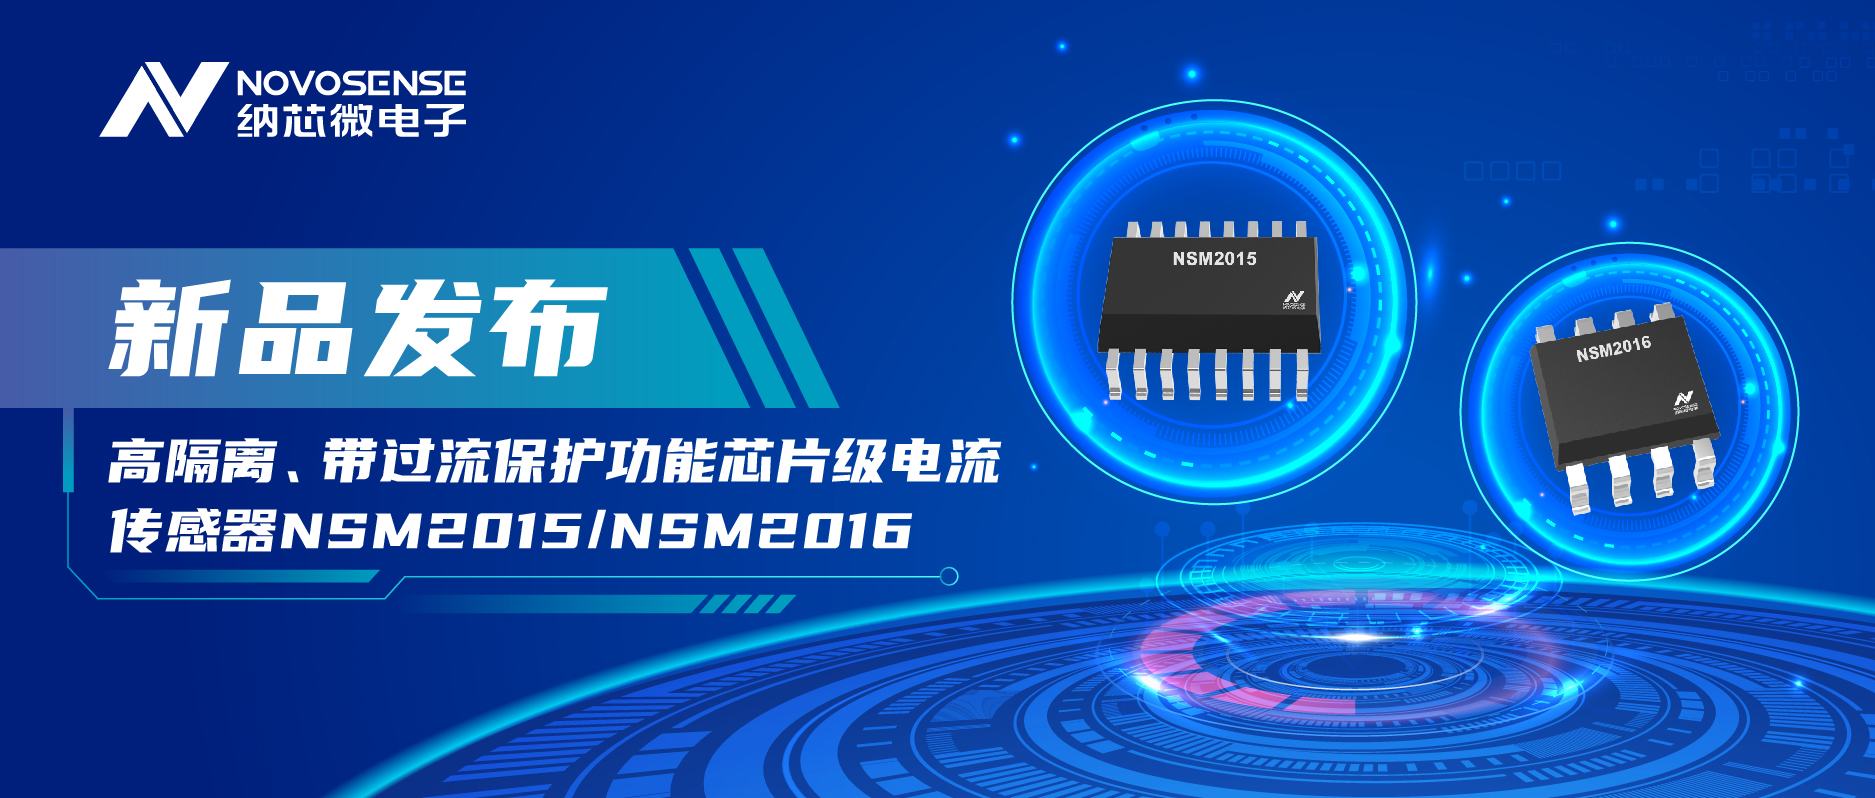 納芯微推出全新高隔離、帶過流保護功能芯片級電流傳感器——NSM2015/NSM2016系列